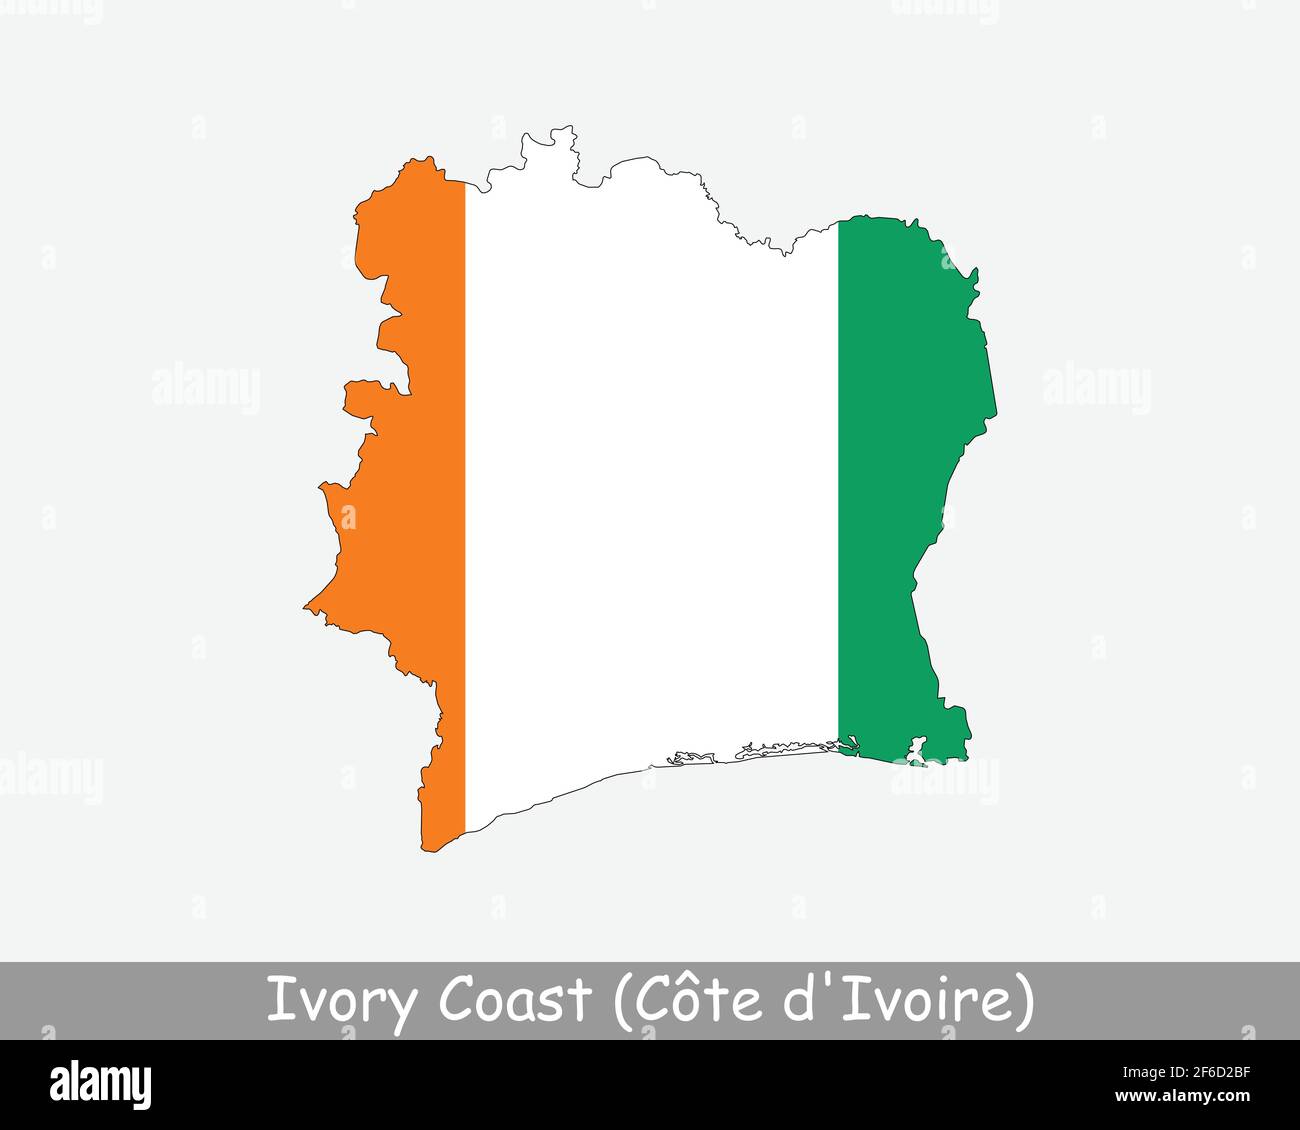 drapeau cote d'ivoire ivory coast flag Stock Photo